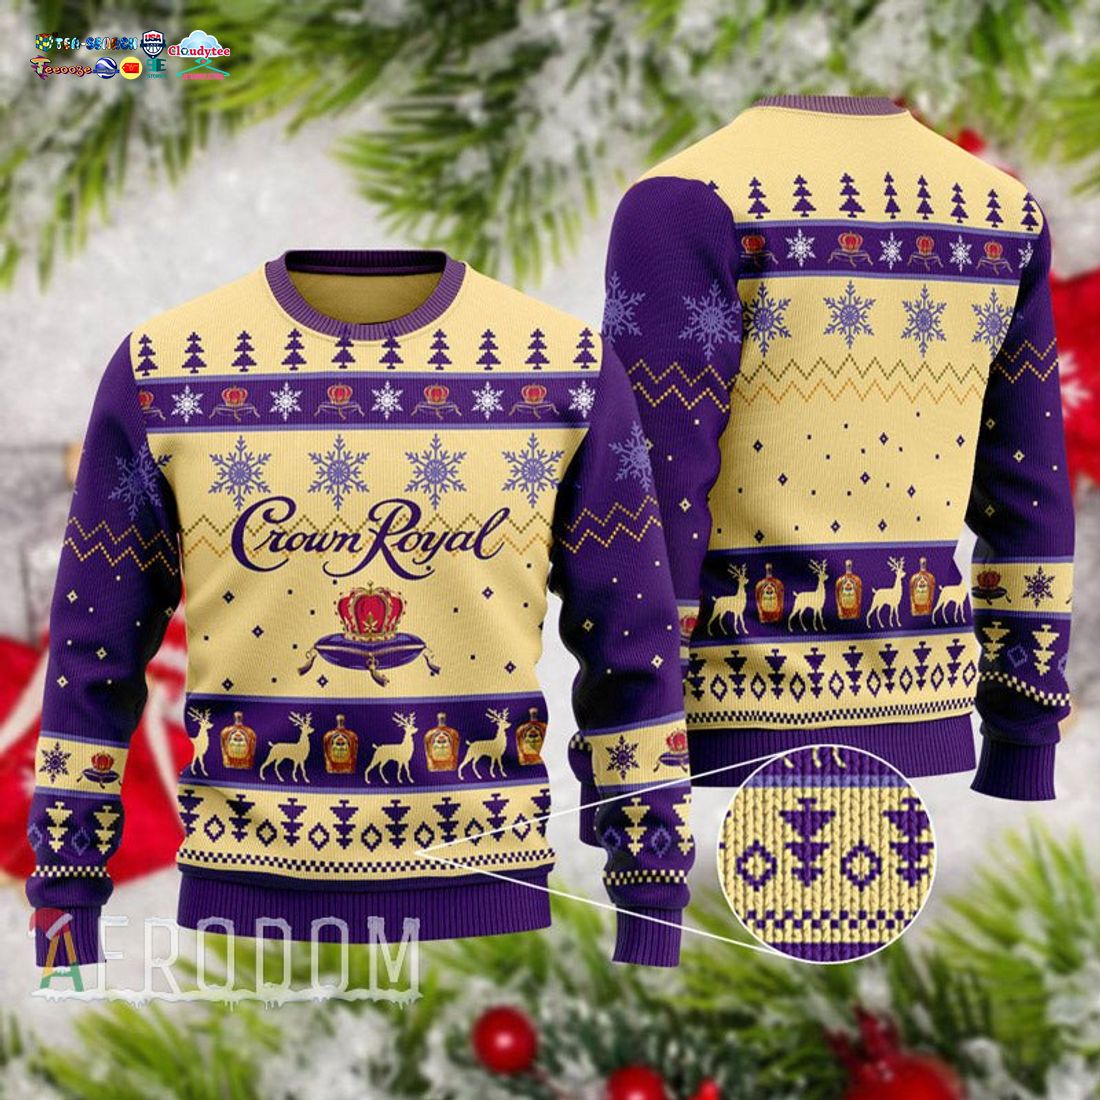 Basic Crown Royal Christmas Sweater